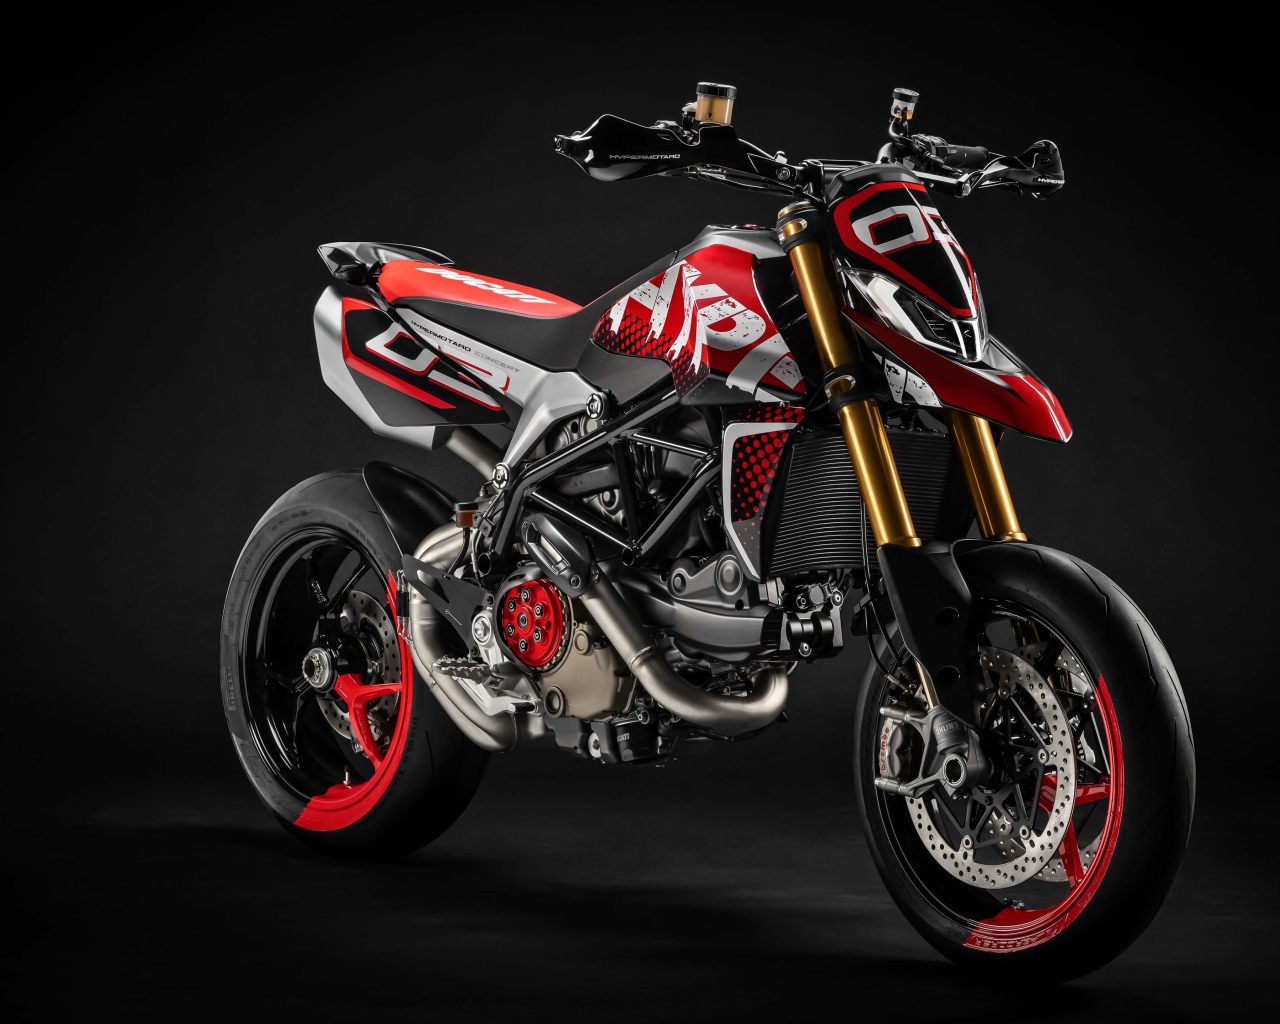 Мотоцикл Ducati Hypermotard 950 Concept 2019 года на сером фоне